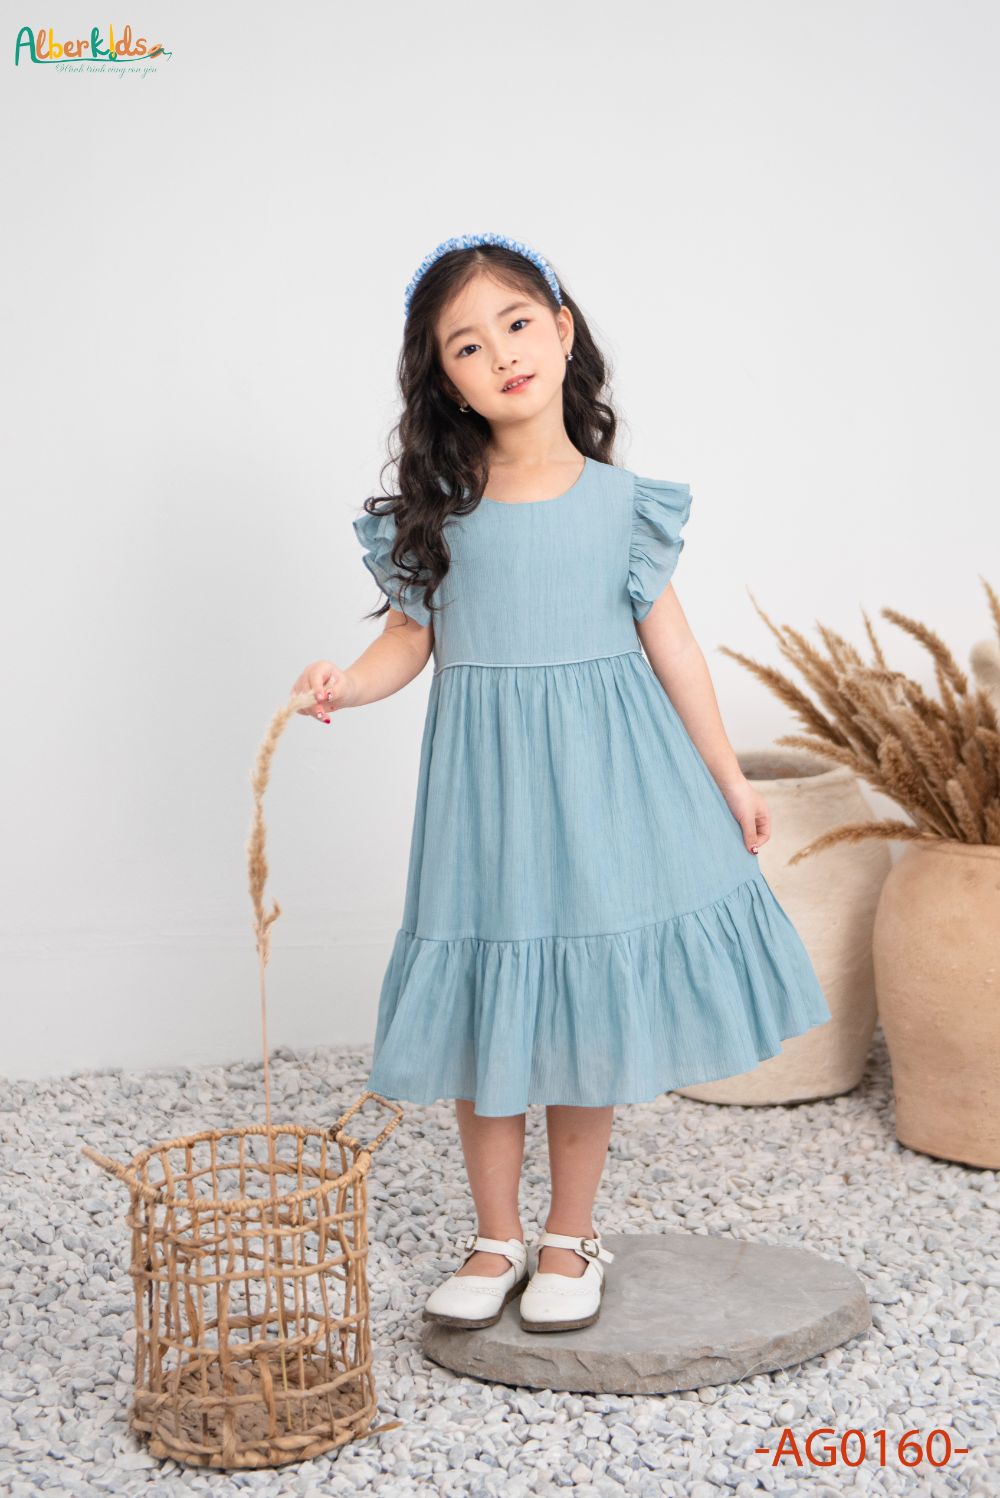 Áo đầm trẻ em giá sỉ - Bỏ sỉ váy đầm trẻ em - Xưởng Titikids